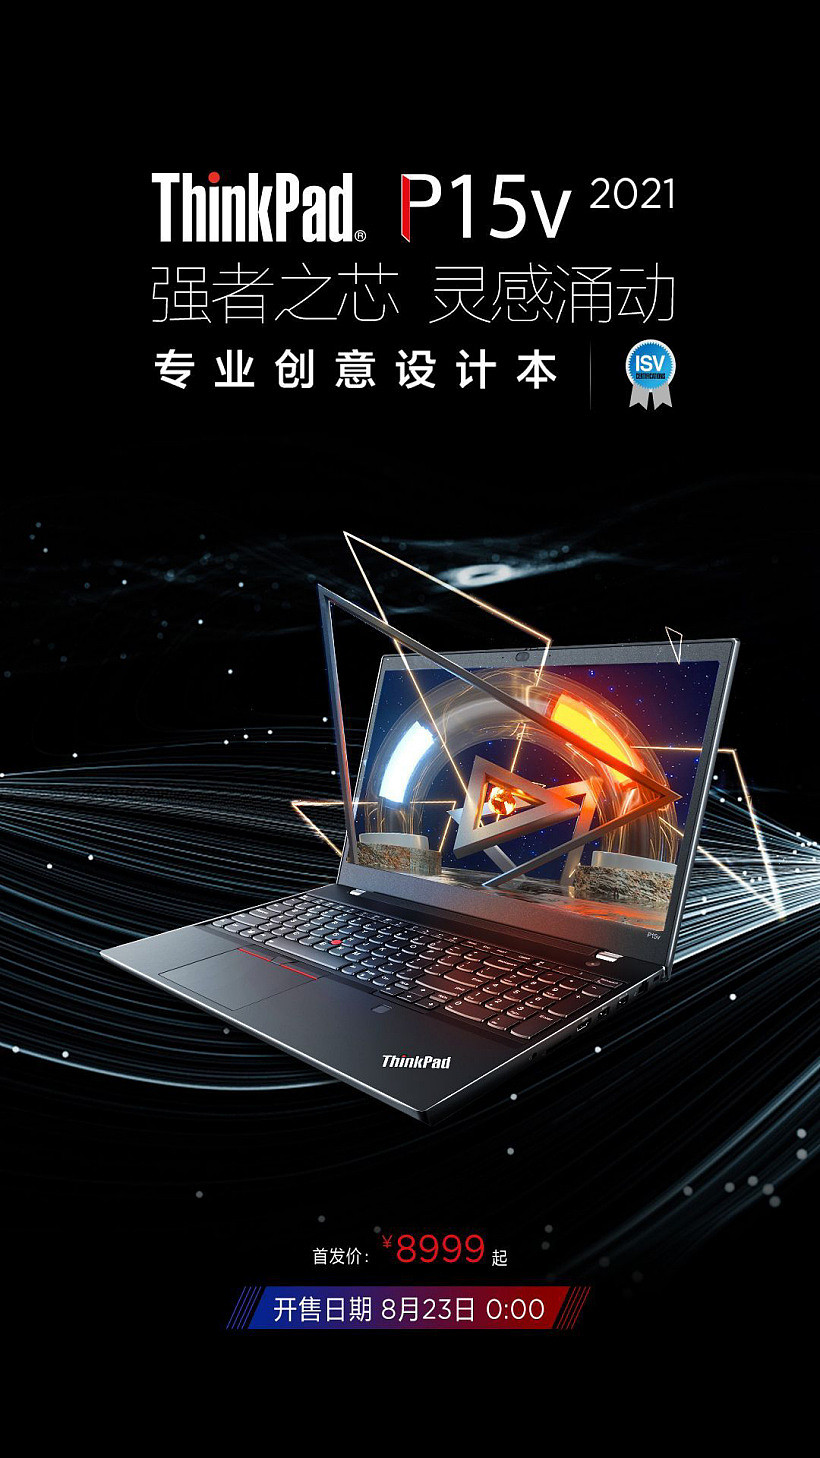 联想 ThinkPad P15v 2021 设计师工作站明日 0 点开售，首发价 8999 元 - 1